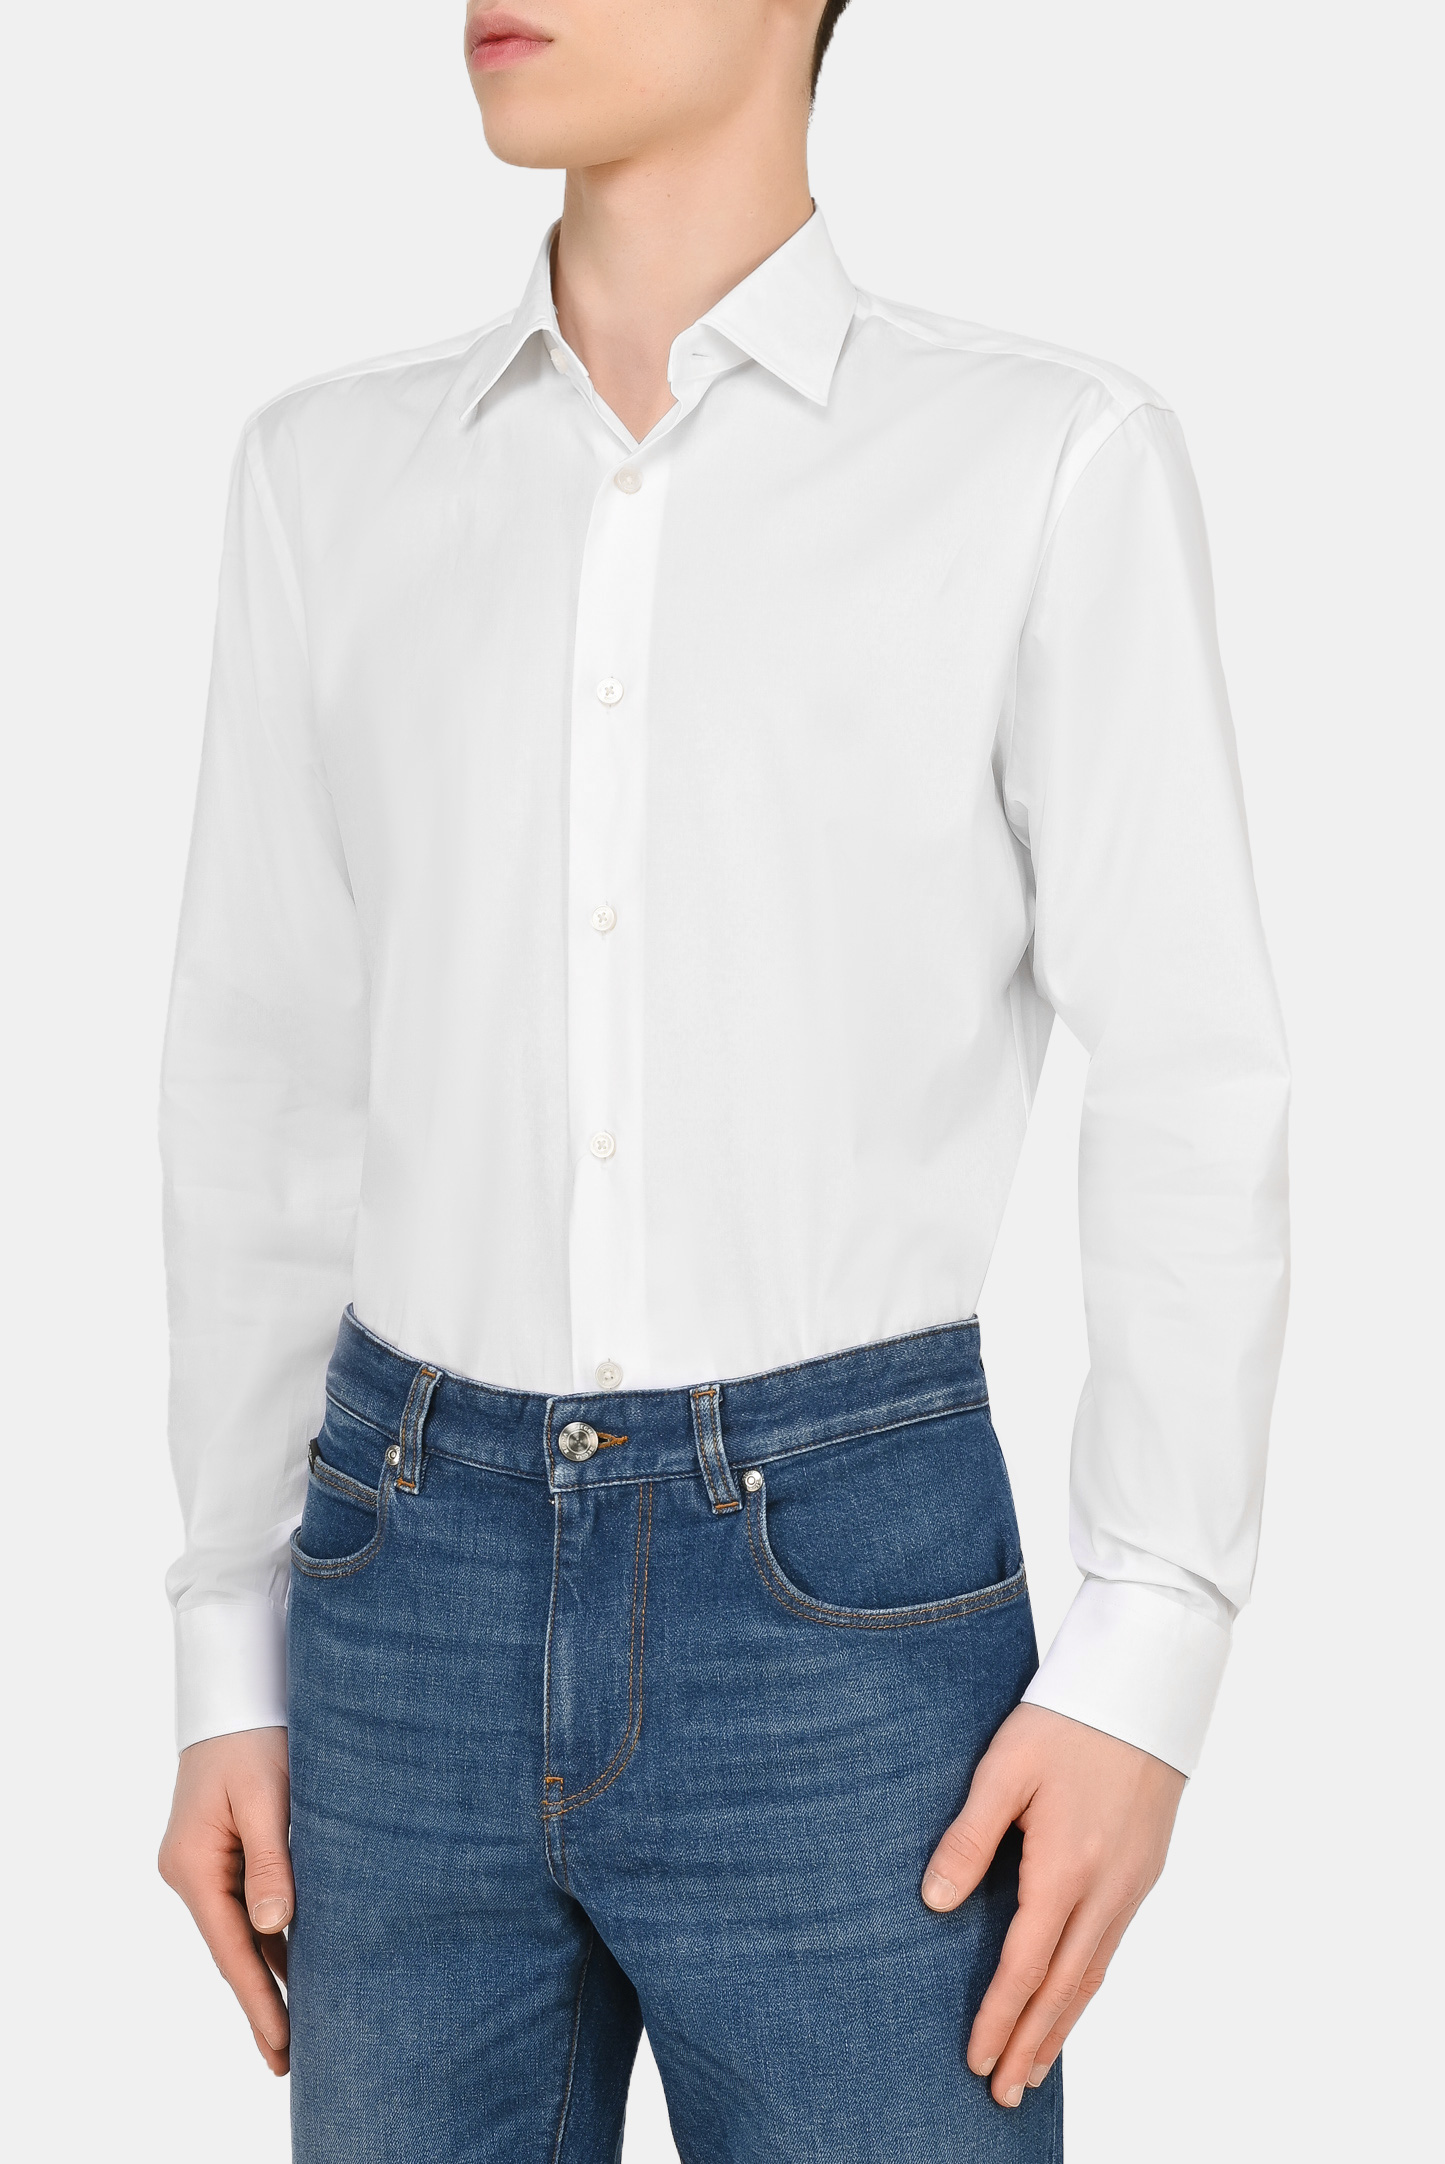 Рубашка Z ZEGNA 305100 ZCRC1, цвет: Белый, Мужской